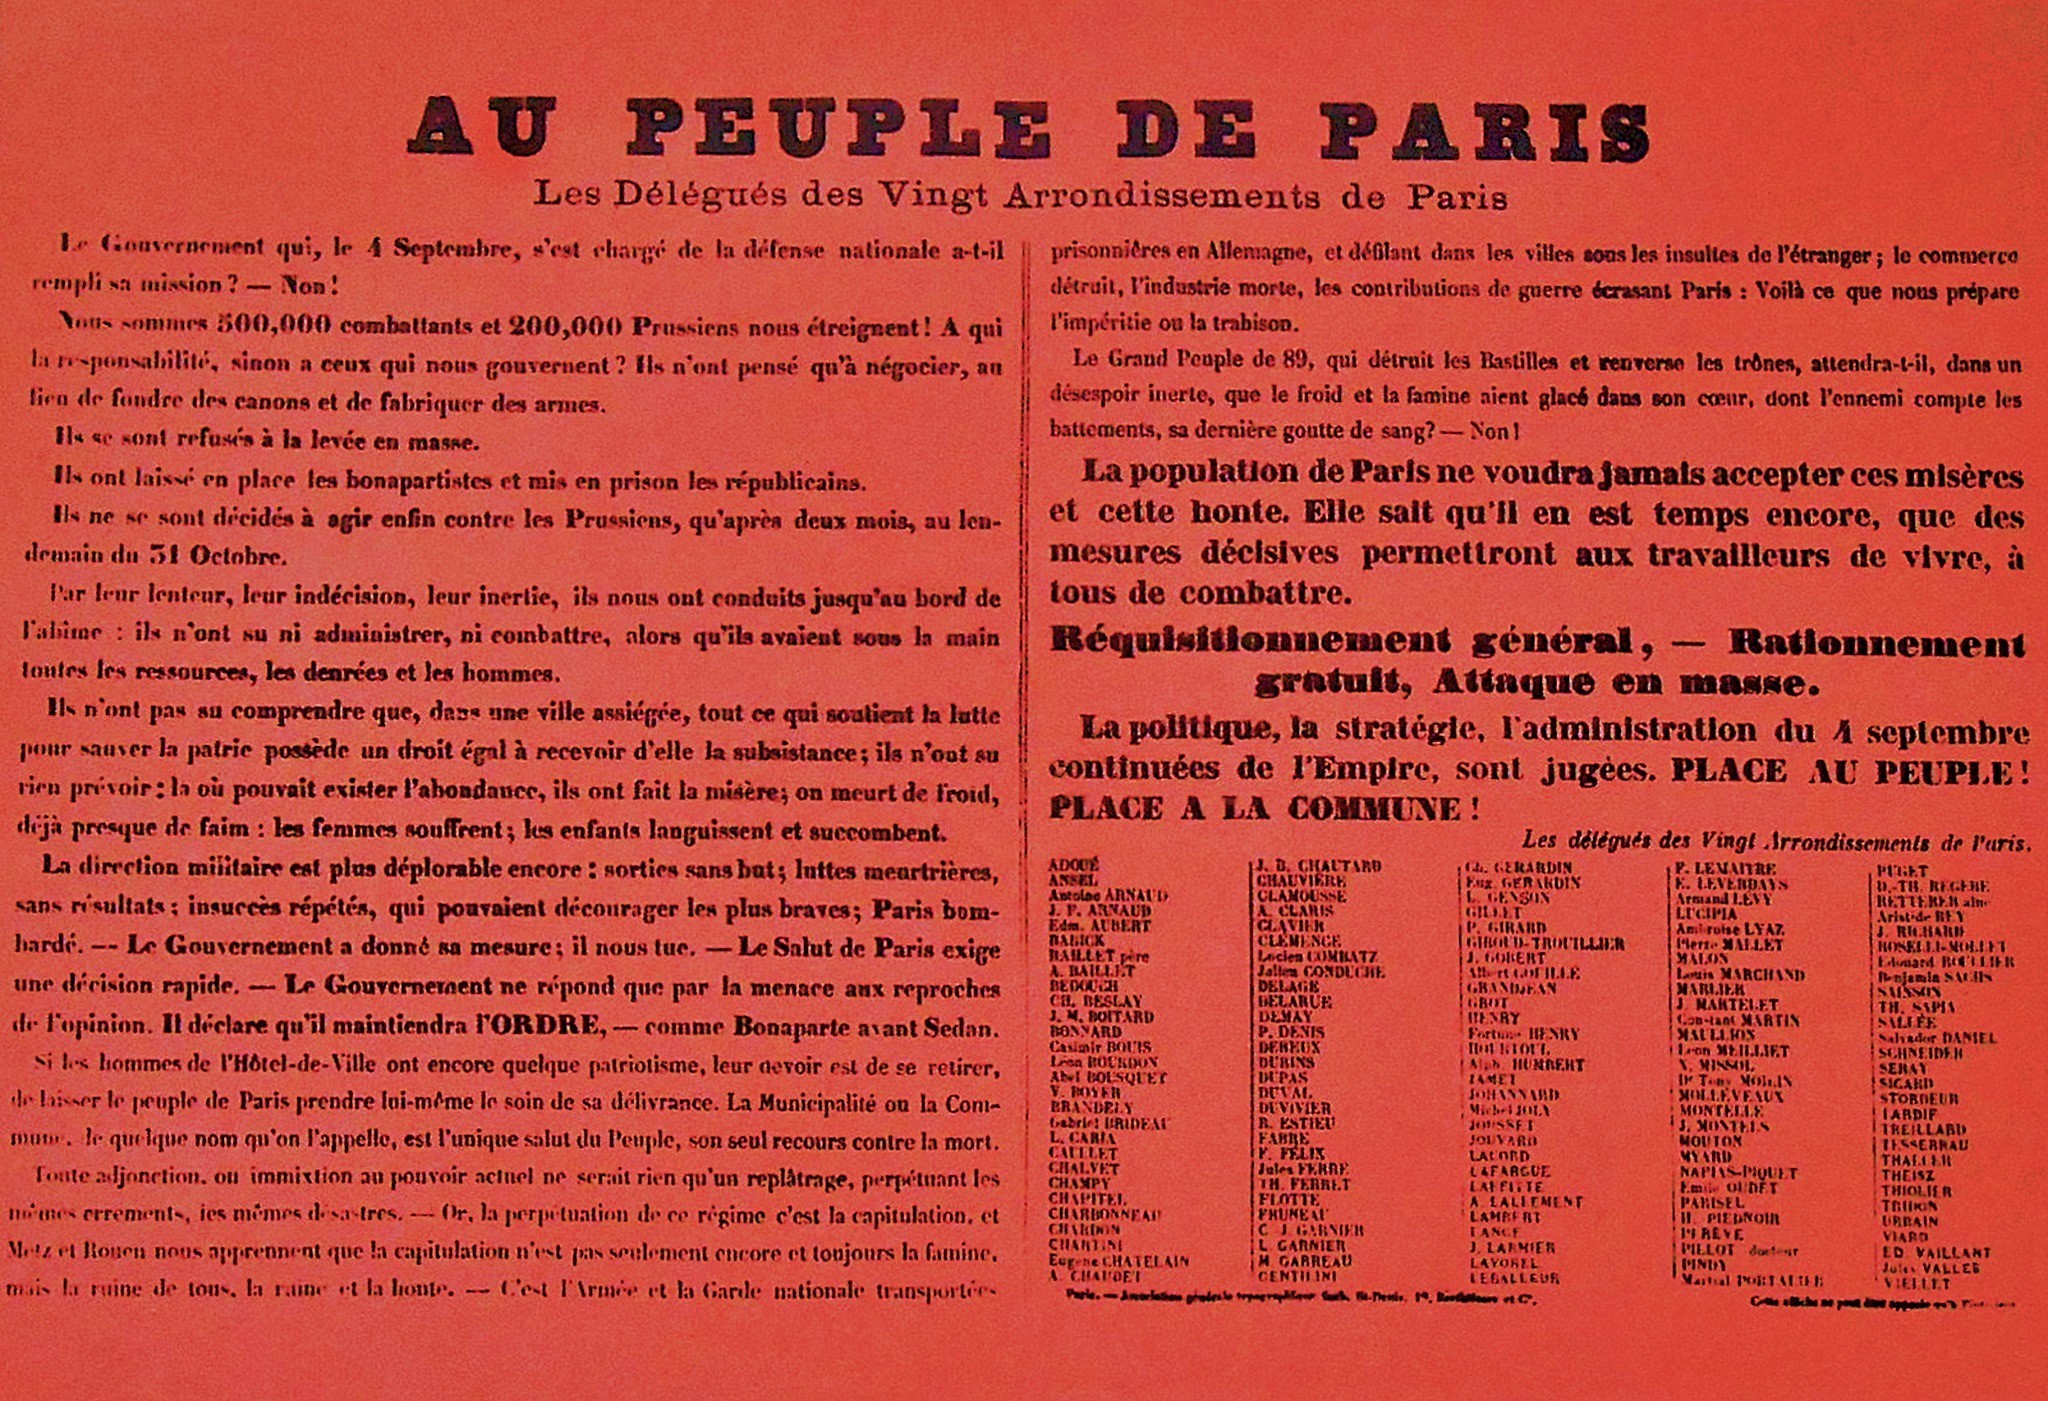 "Affiche rouge" du 6 janvier 1871 : Au peuple de Paris, les délégués de vingt arrondissements de Paris 